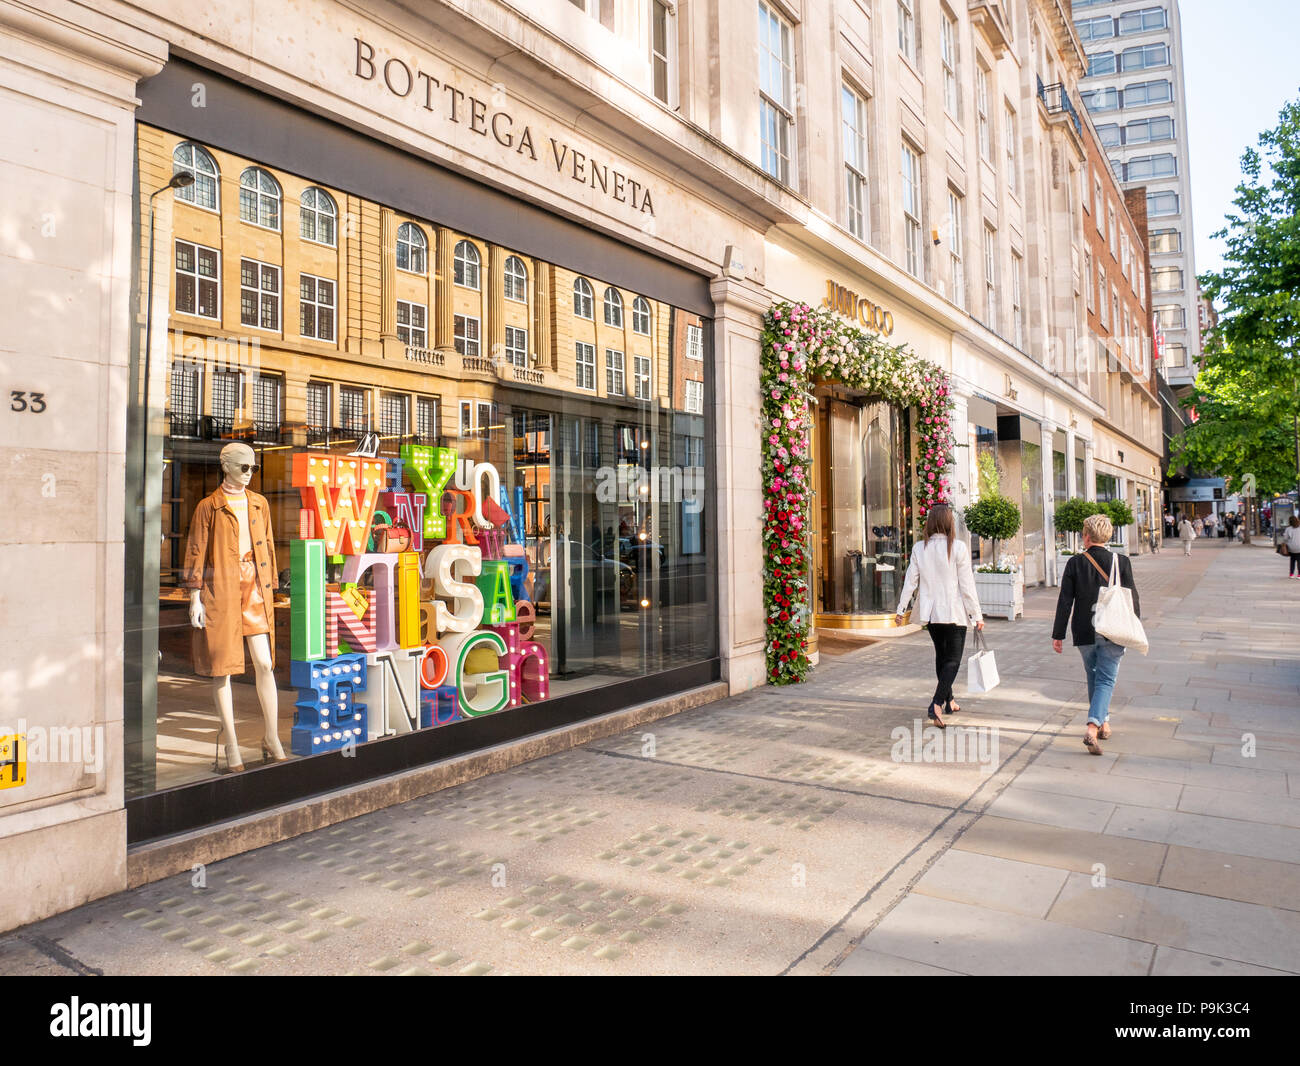 Bottega Veneta in Sloane Street, London, UK Stock Photo